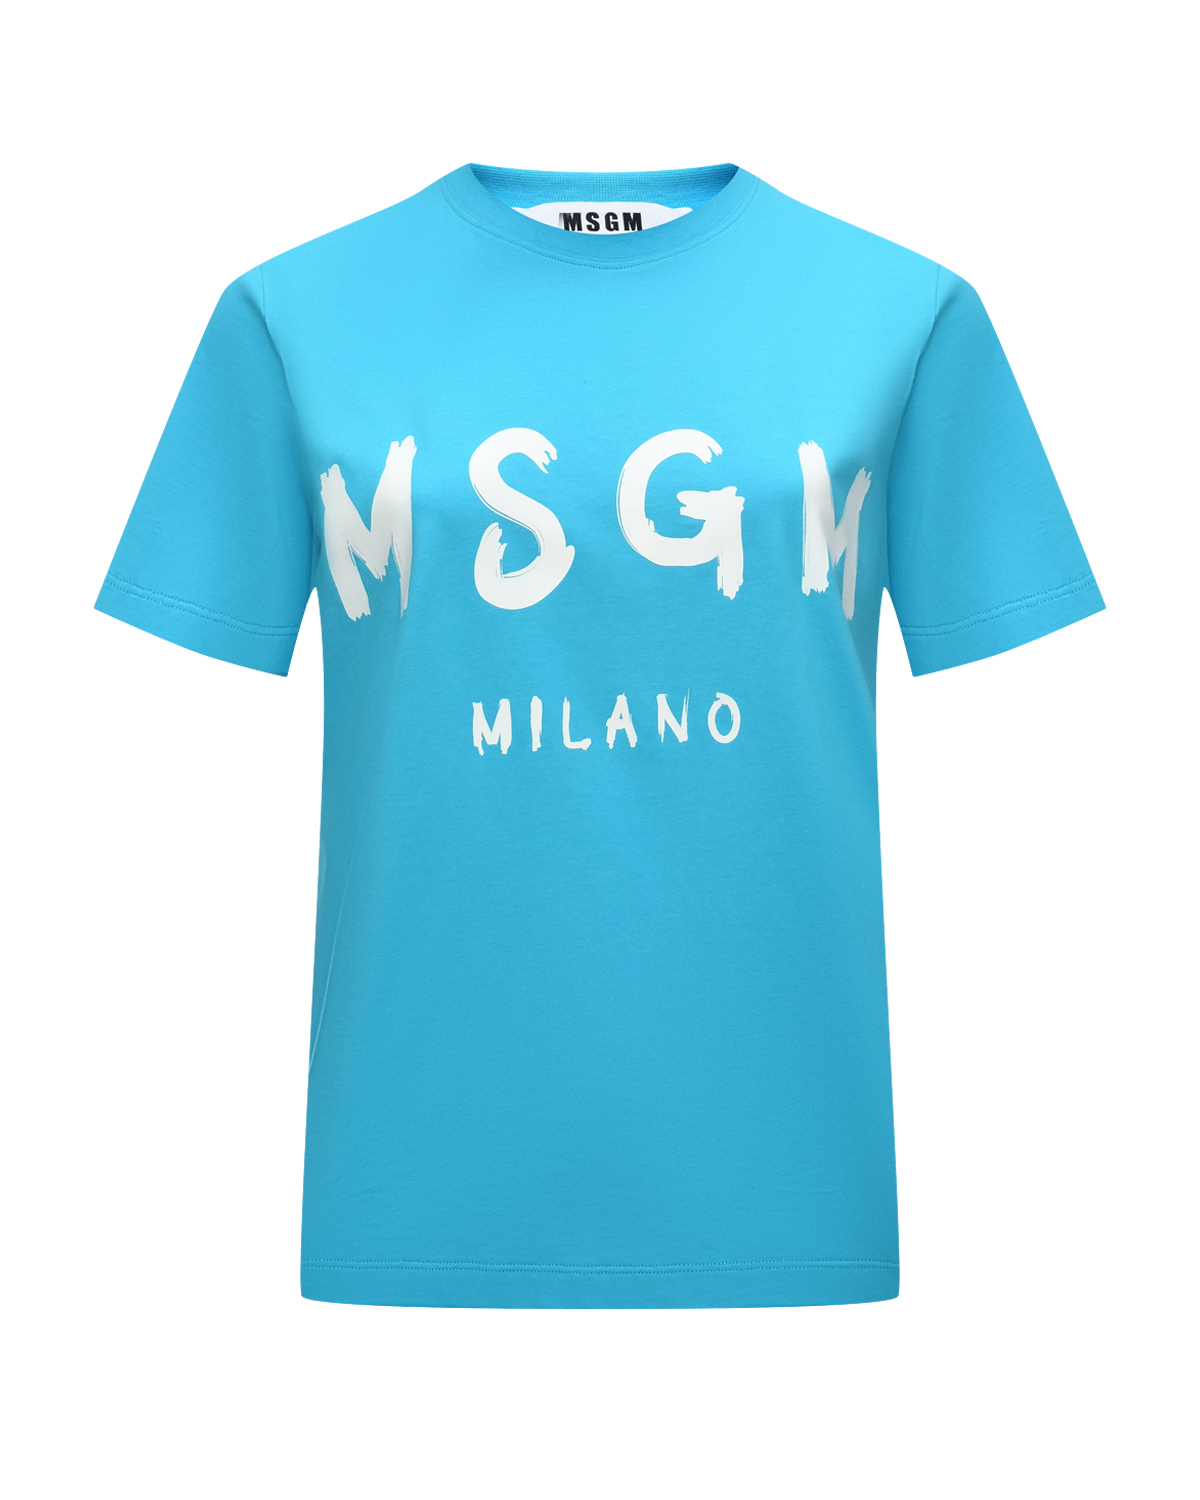 Футболка с крупным лого, голубая MSGM